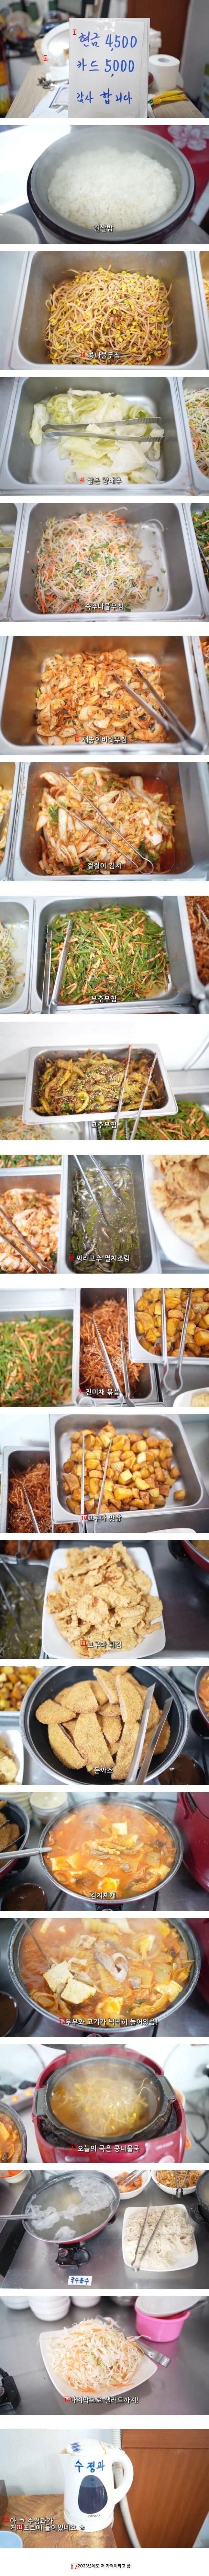 4500ウォン 韓国料理ビュッフェの近況